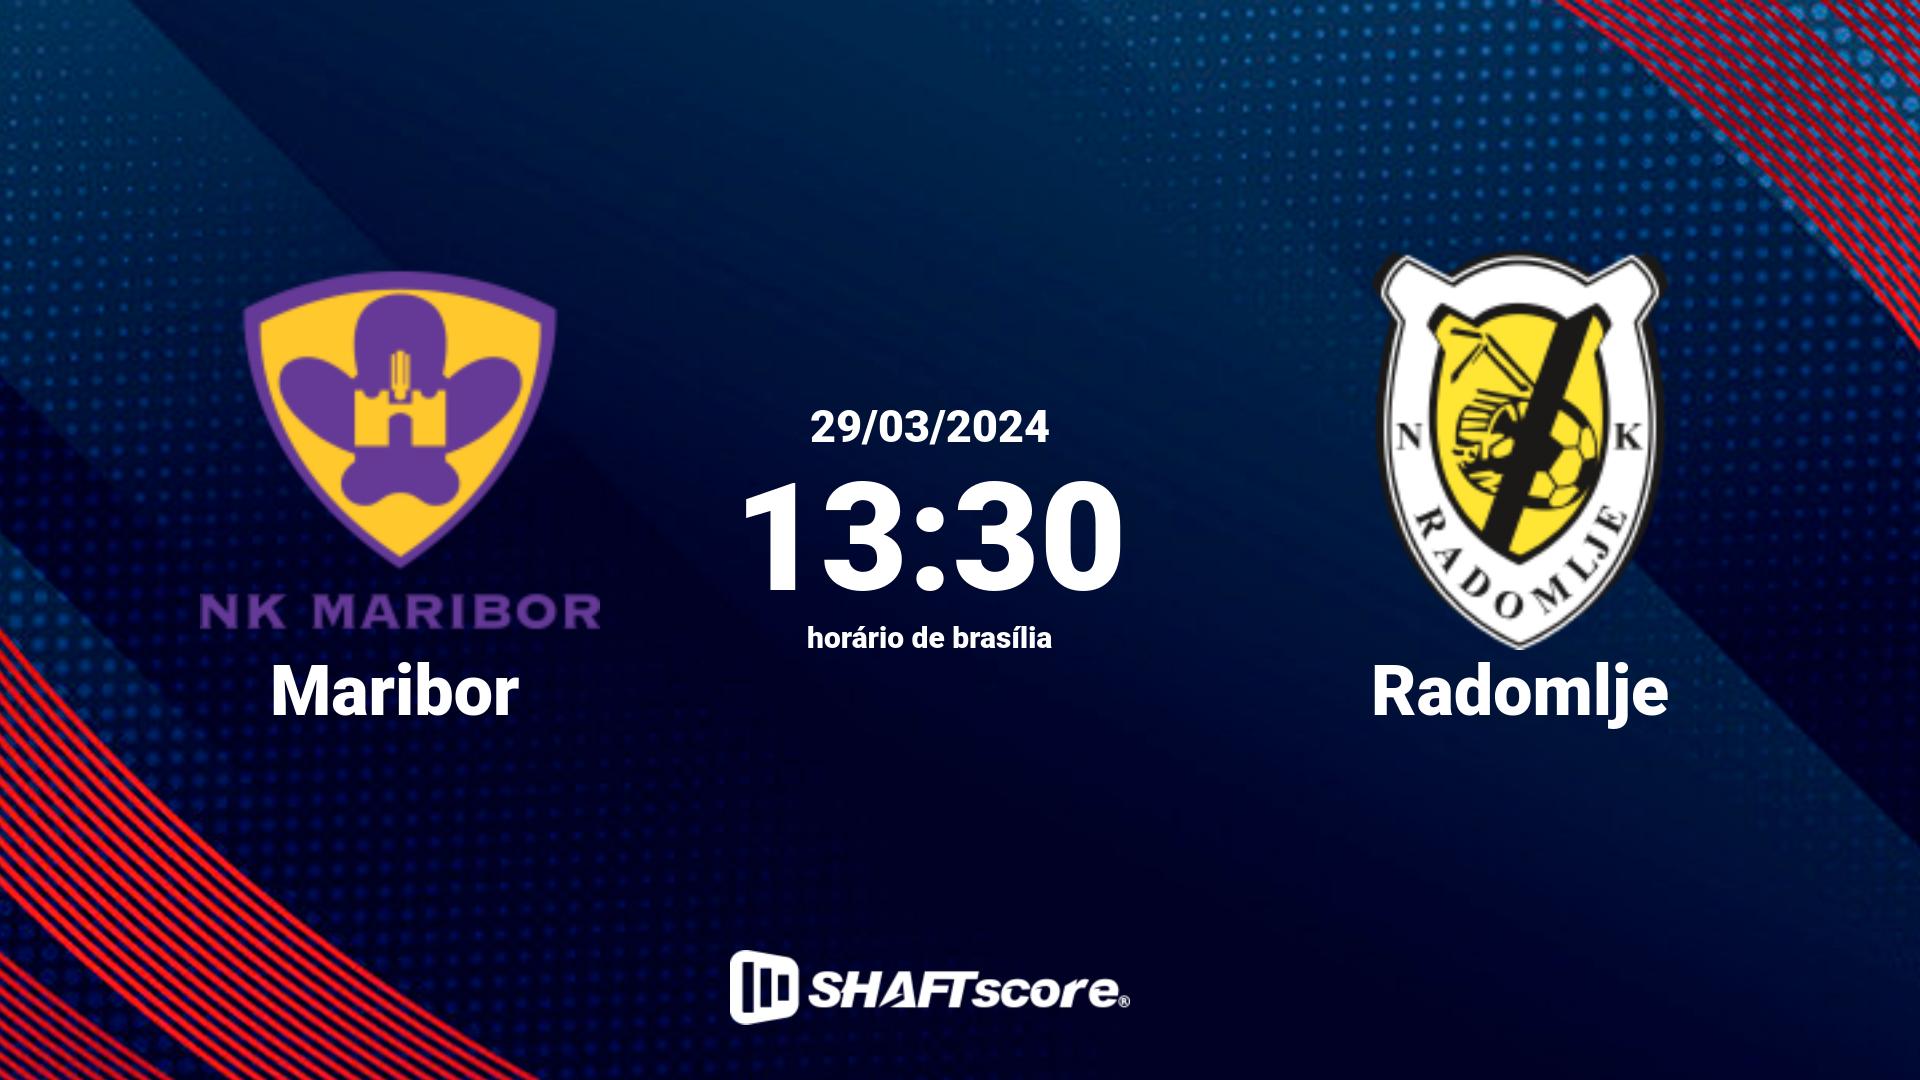 Estatísticas do jogo Maribor vs Radomlje 29.03 13:30